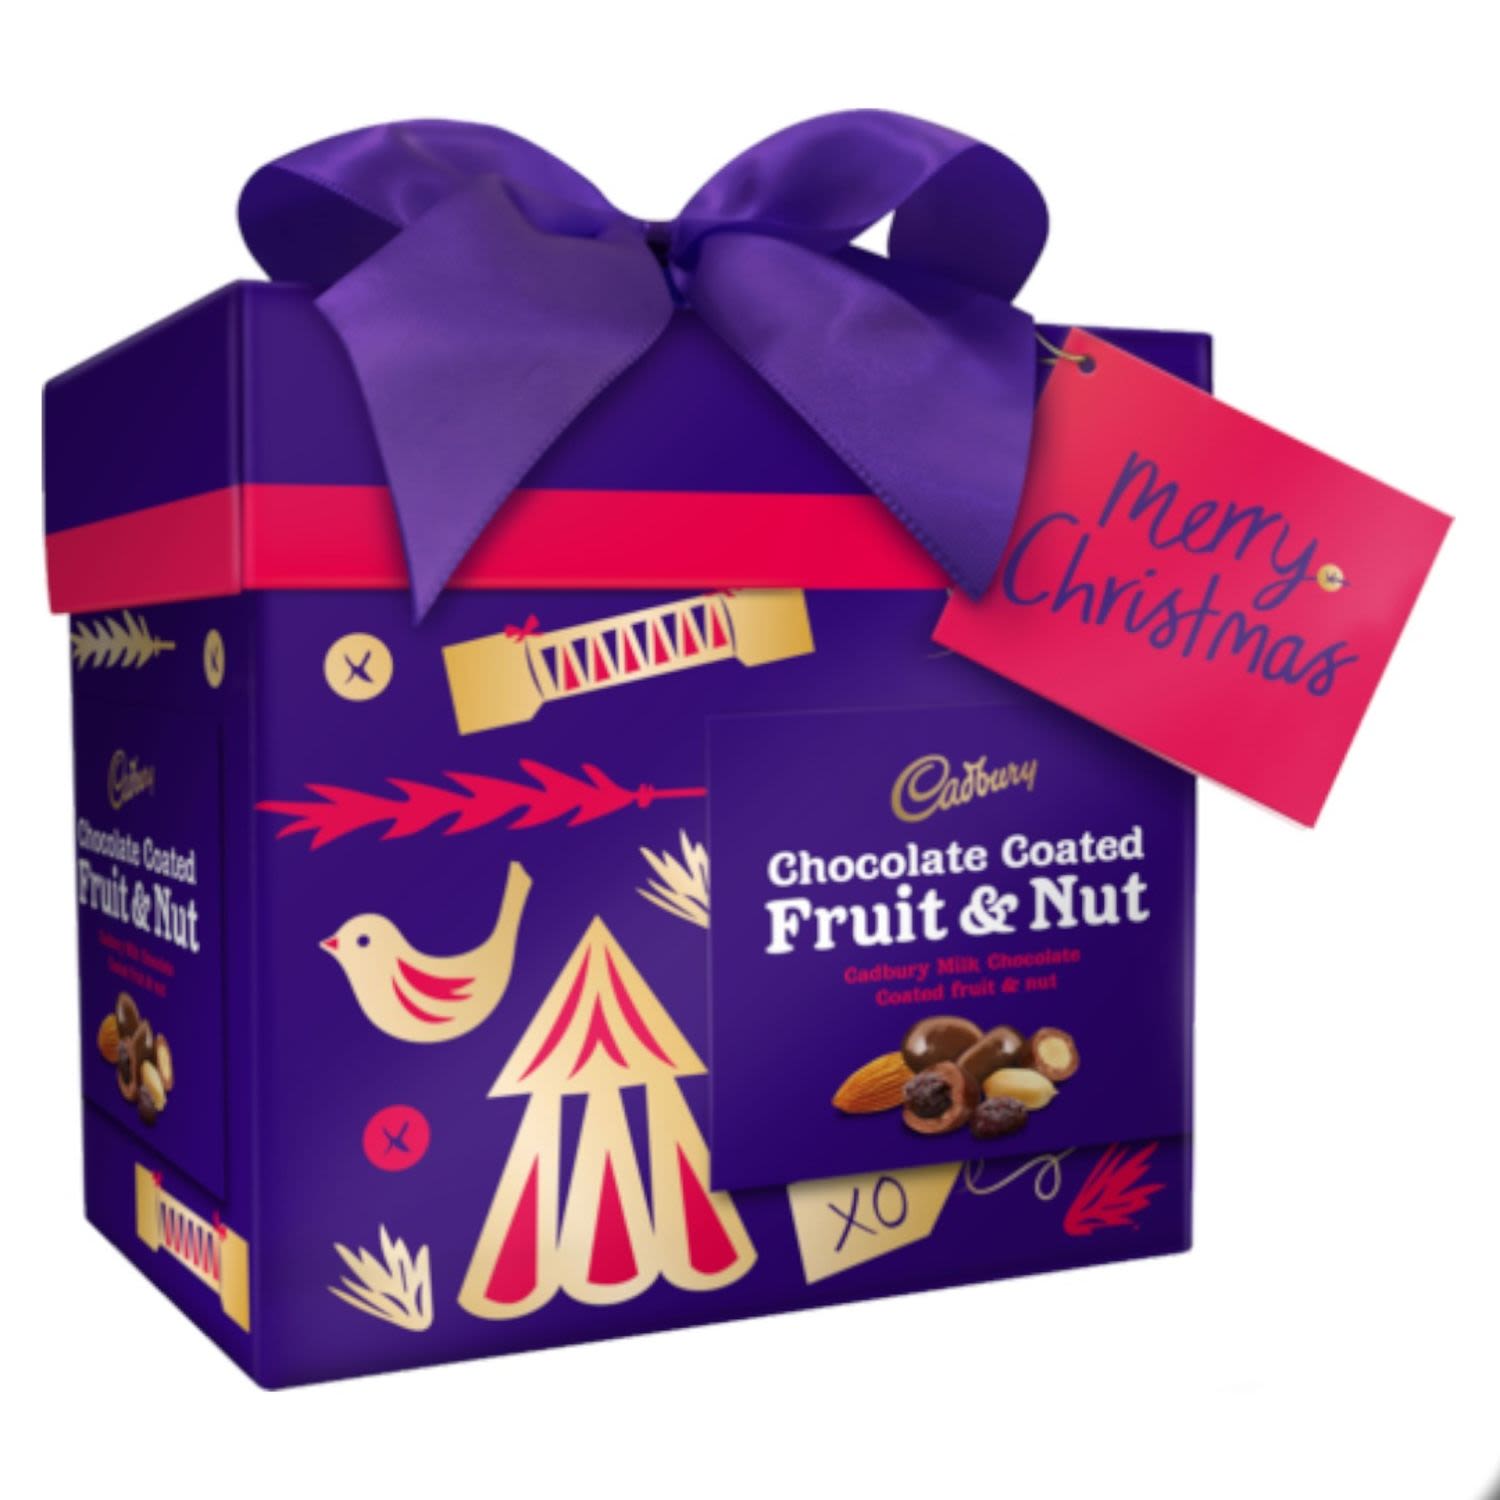 Cadbury Chocolate Coated Fruit & Nut Gift Box, 225 Gram